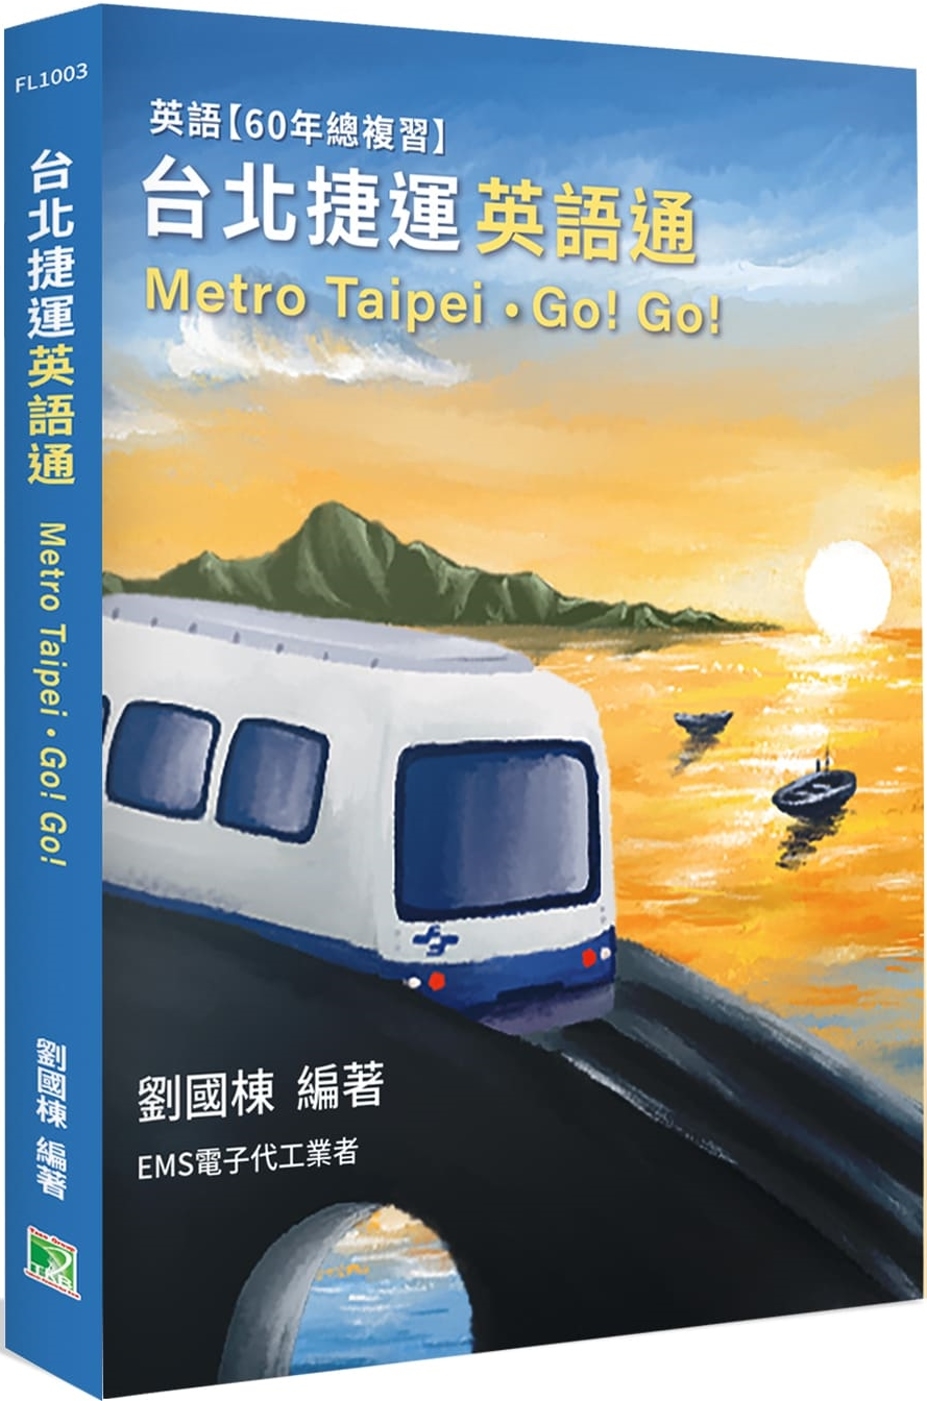 台北捷運 英語通(Metro Taipei)˙Go! Go![本書含電子代工全程英語]